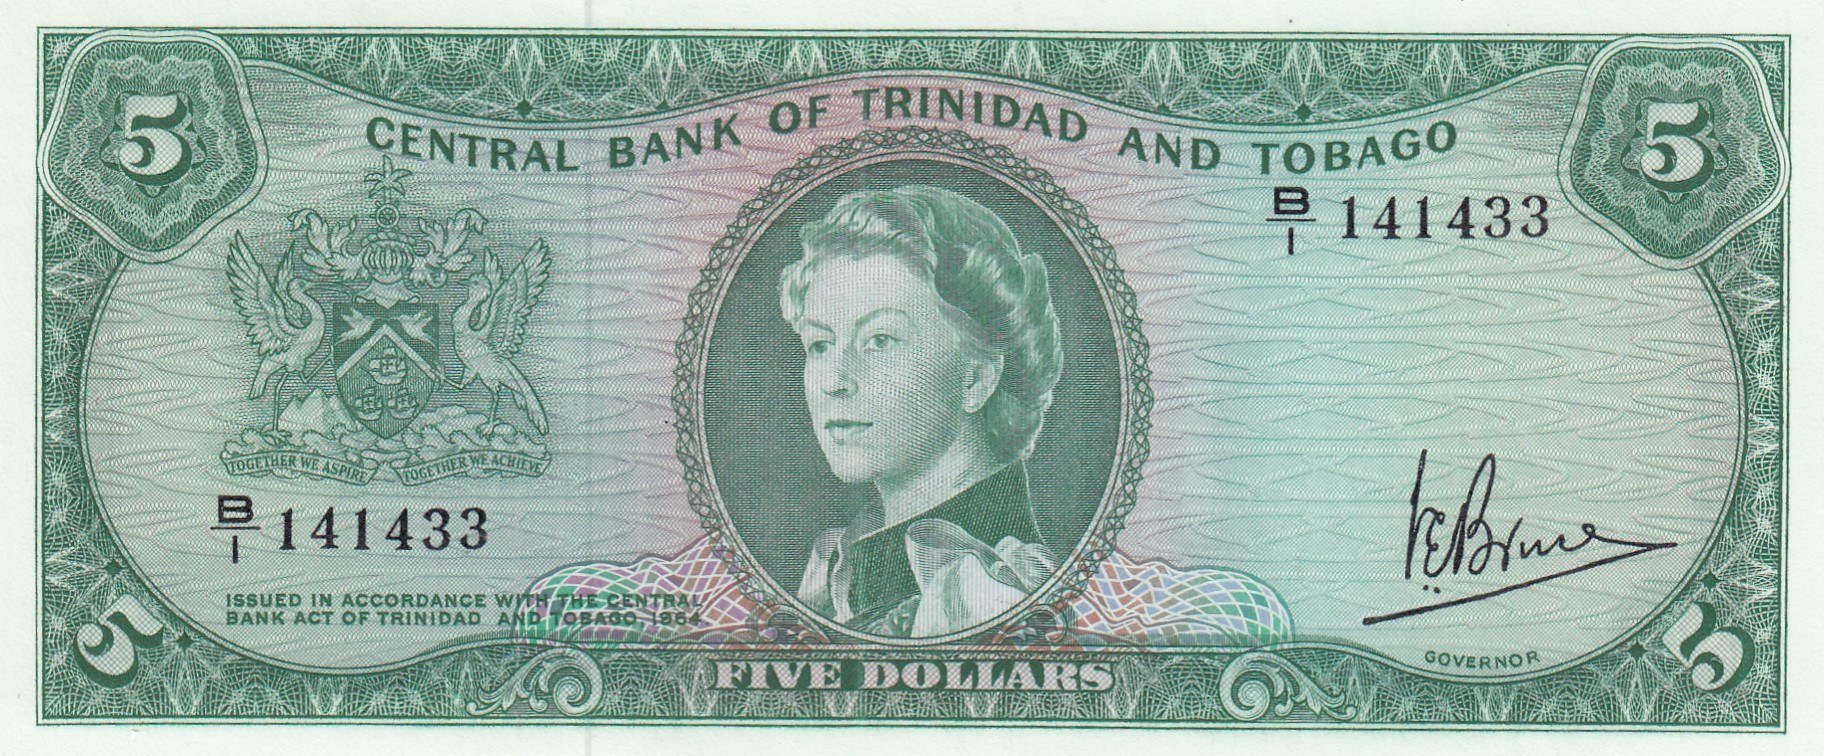 Купюры мм. 20 Долларов Тринидад и Тобаго 1964. 1 Доллар Тринидад и Тобаго 1964 UNC. Банкноты Тринидад.